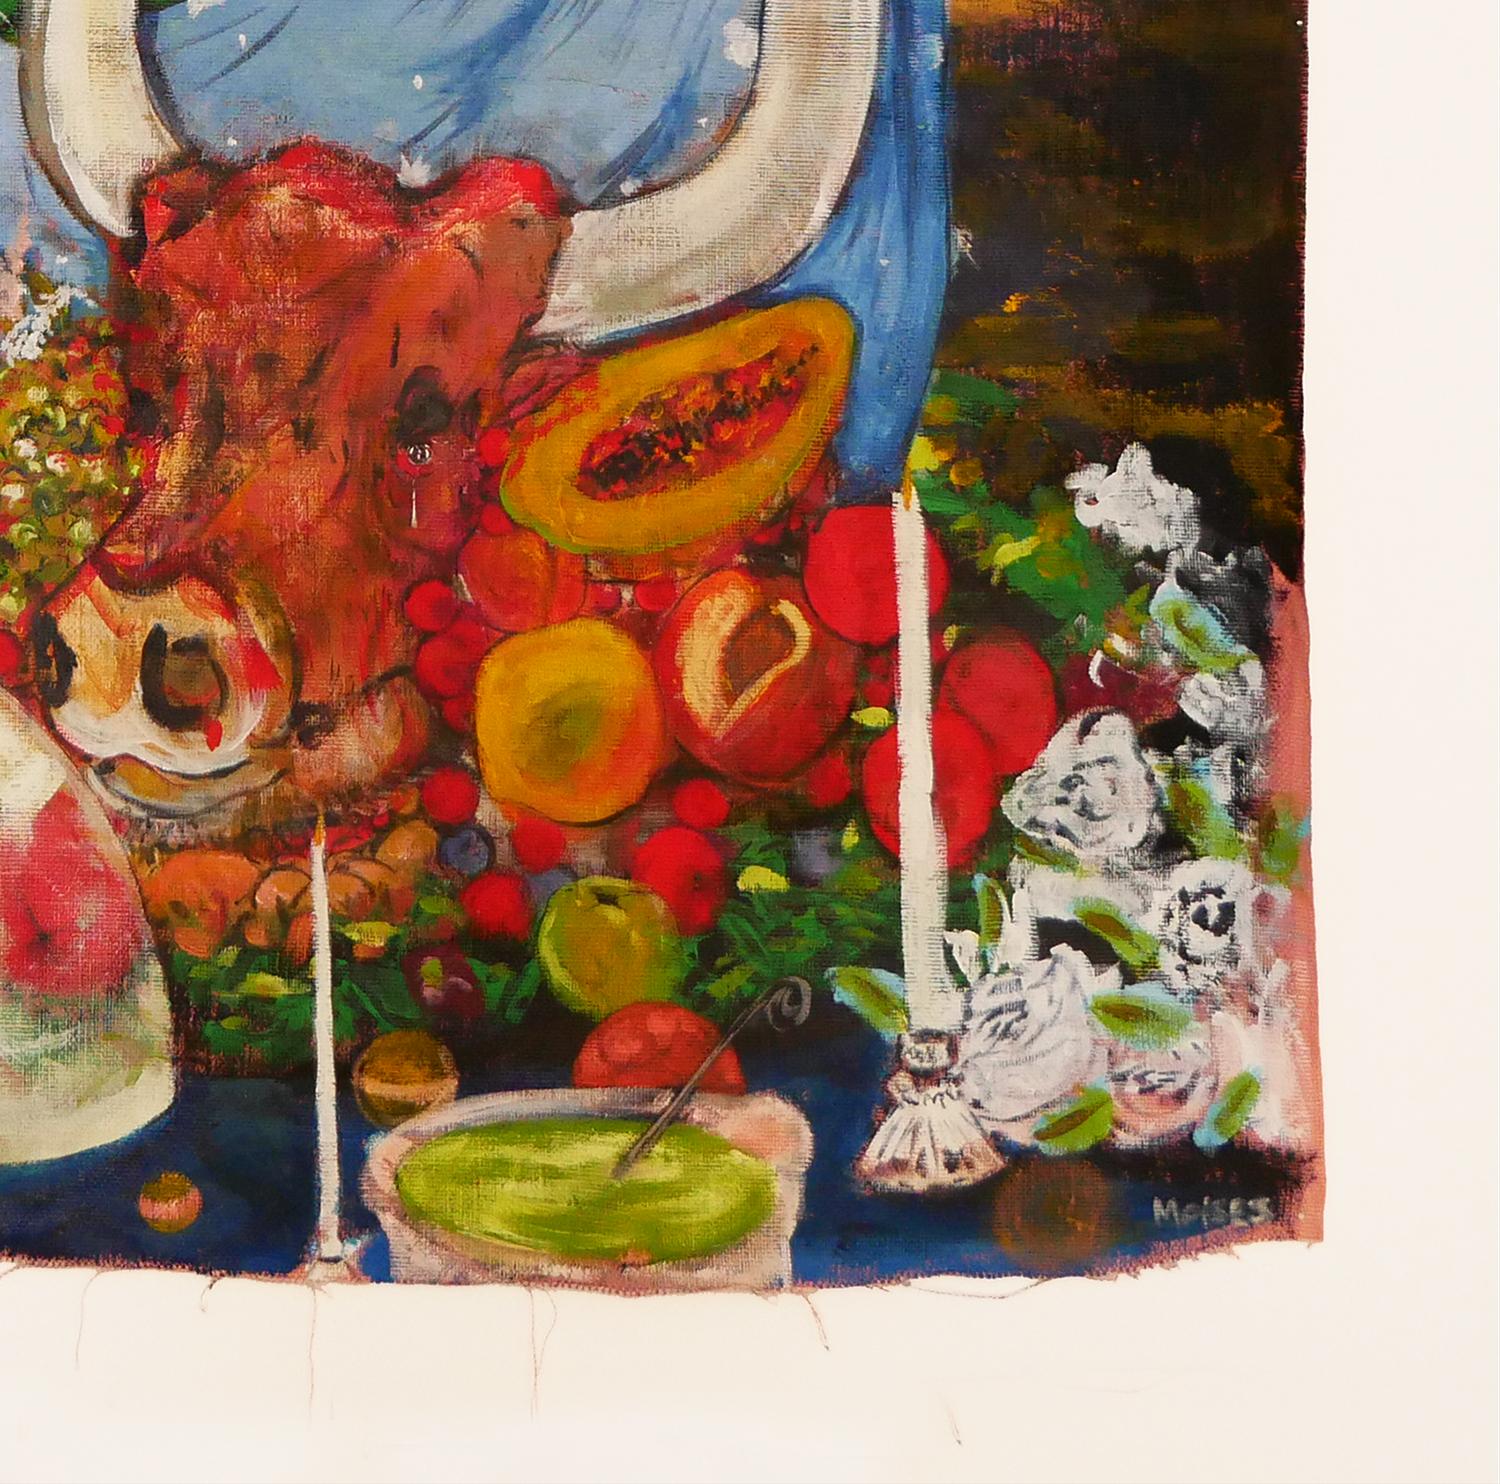 Buntes, skurriles, abstraktes zeitgenössisches Gemälde des Künstlers Moisés Villafuerte aus Houston, TX. Dieses Gemälde zeigt eine düstere Abendszene mit einem Mann in einem babyblauen Rüschenmantel, der einen Totenkopf hält. Die Figur wird von